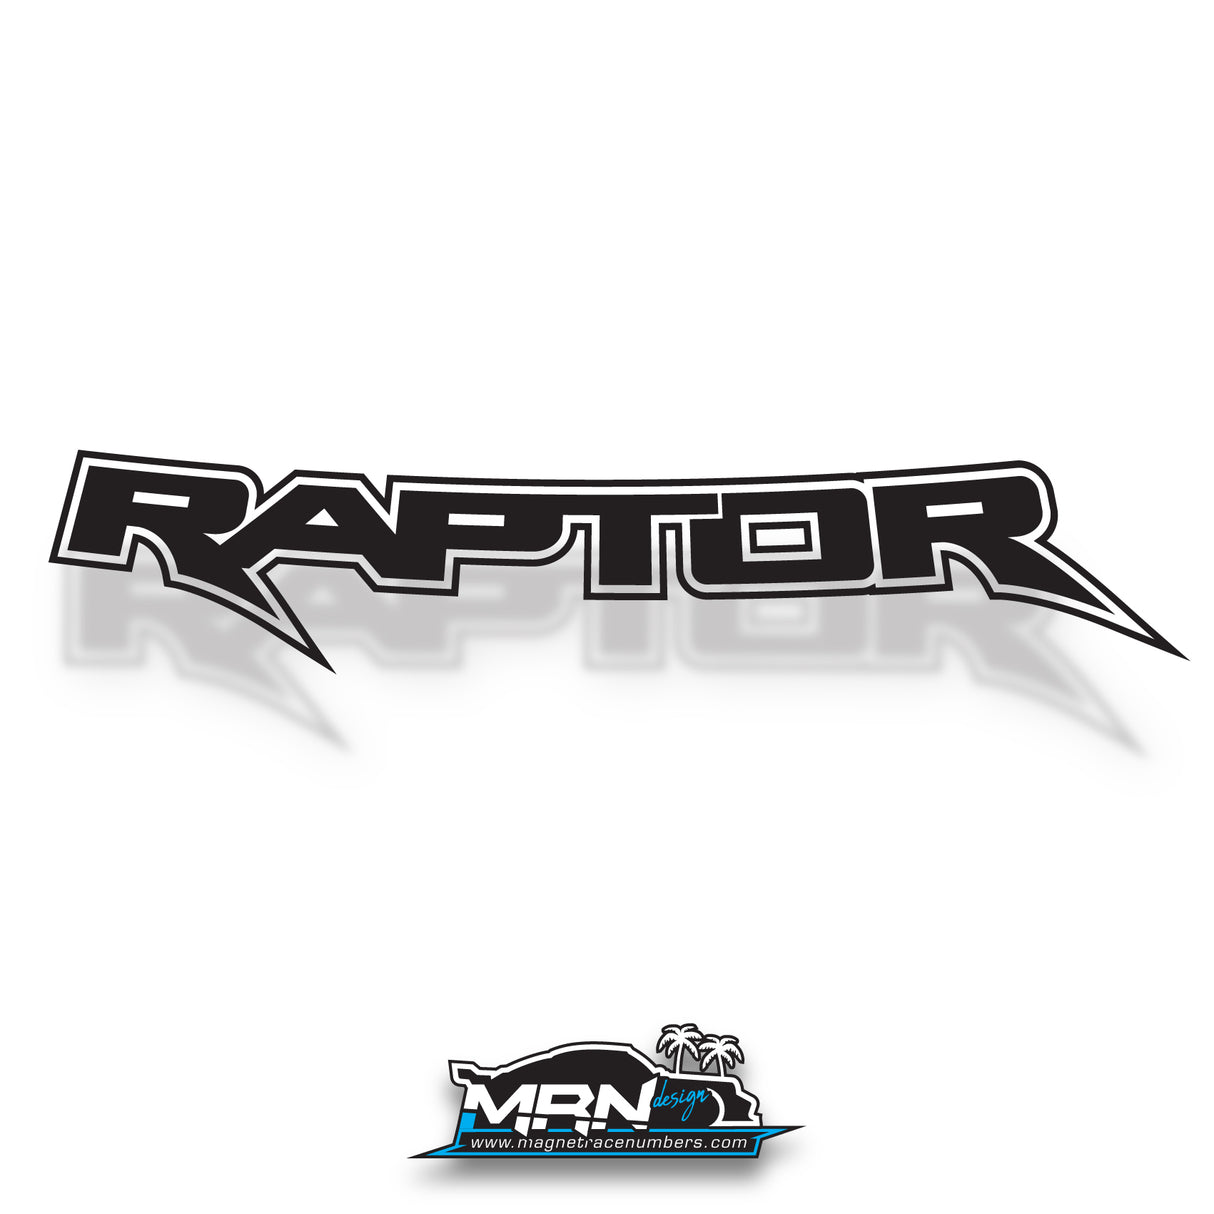 Ford Ranger "Raptor" PX3 / Next Gen - Rear Tub Decals